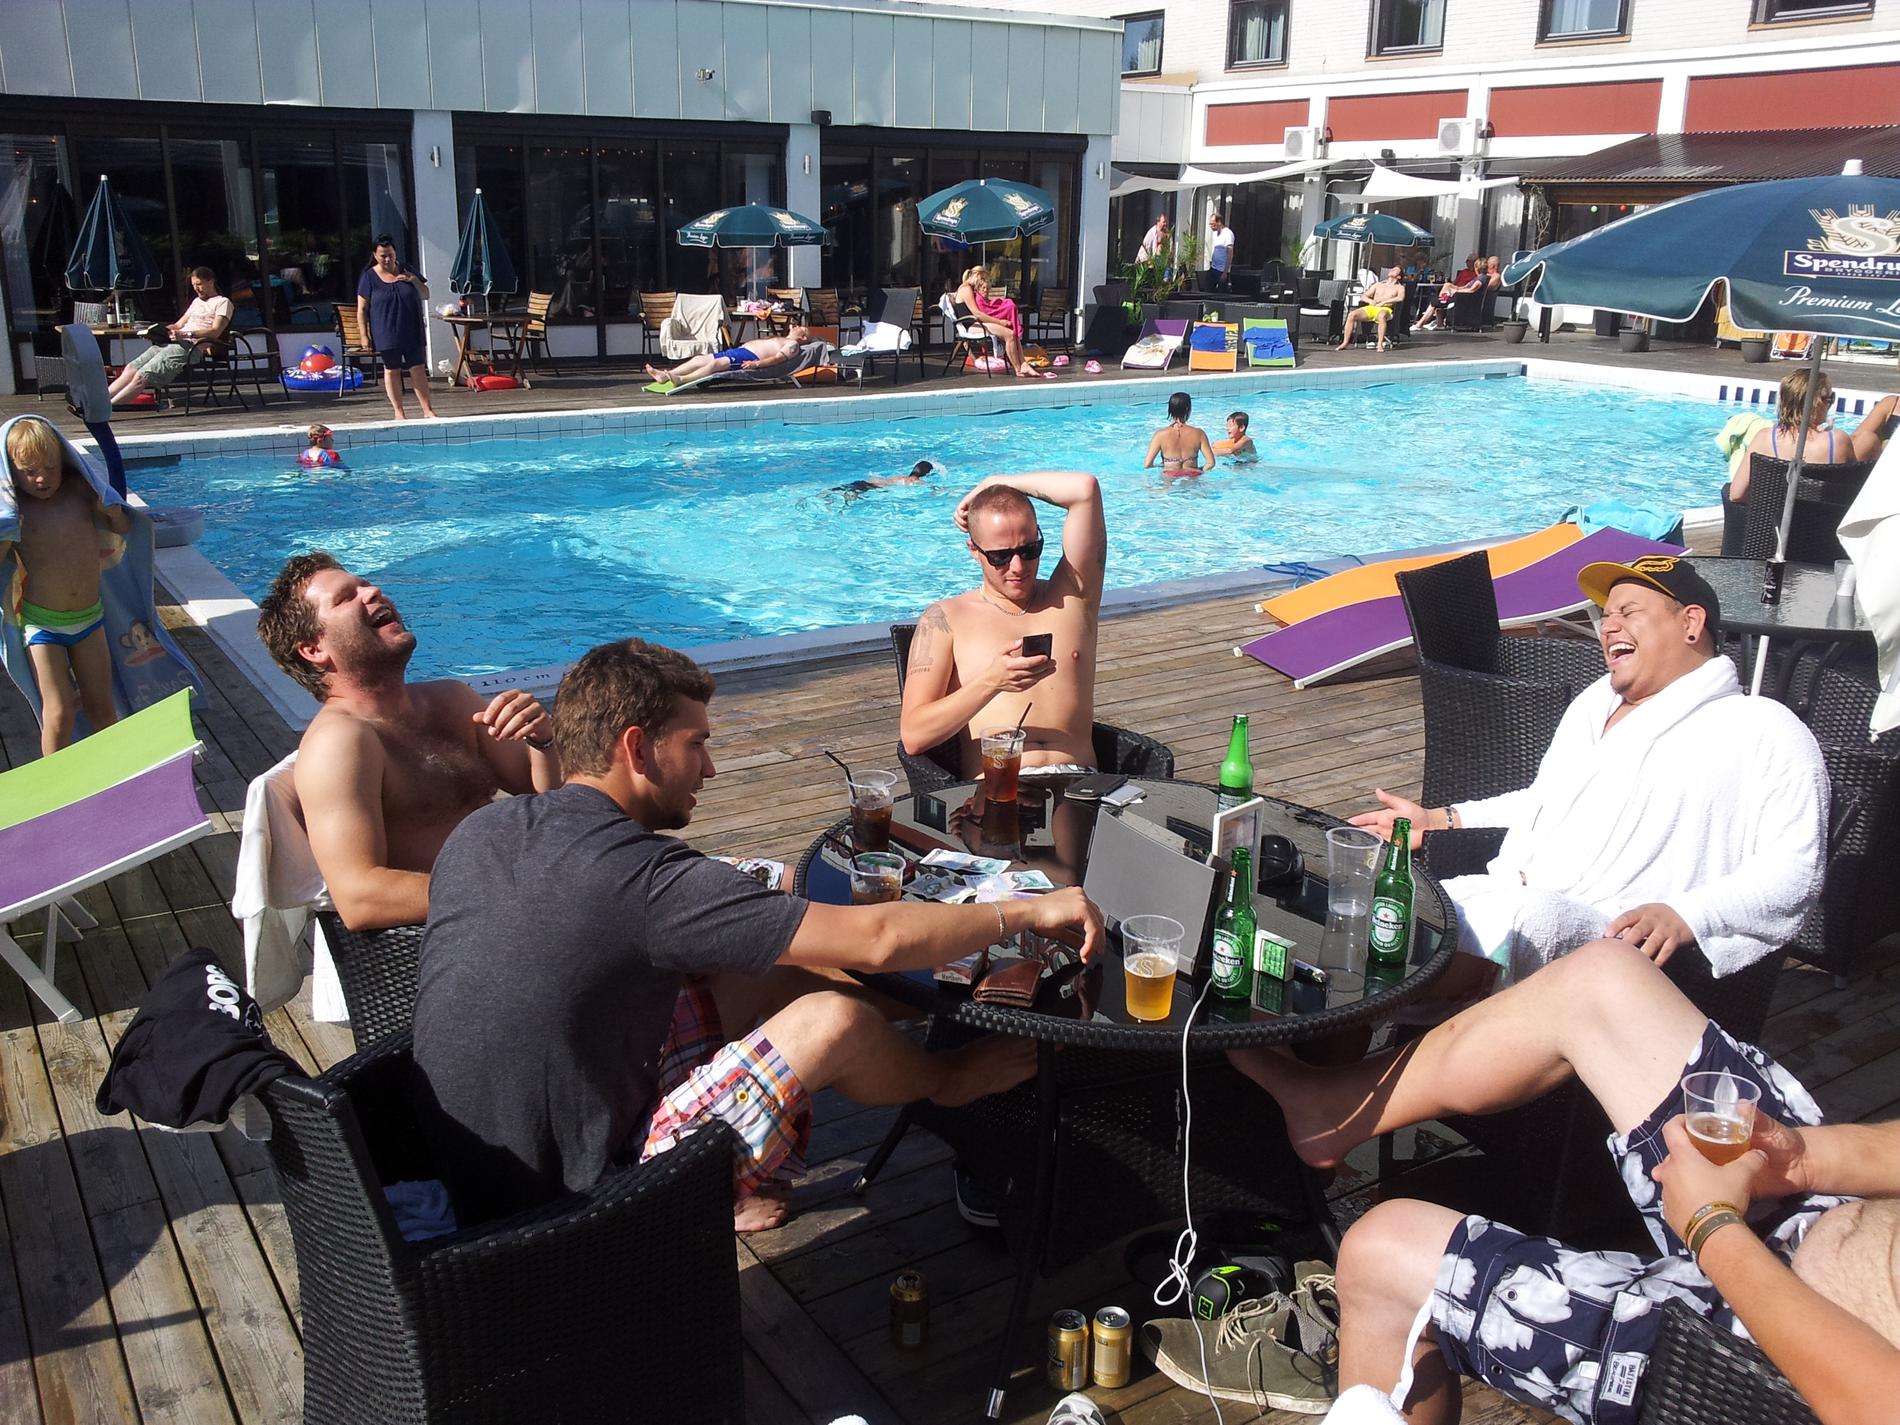 Grabbgänget åkte från Göteborg till Karlstad och tog in på hotell med pool och poolbar. "Hotellet gjorde halva resan. Vi hade kul som ni säkert ser på bilden", skriver Martin Hermansson.